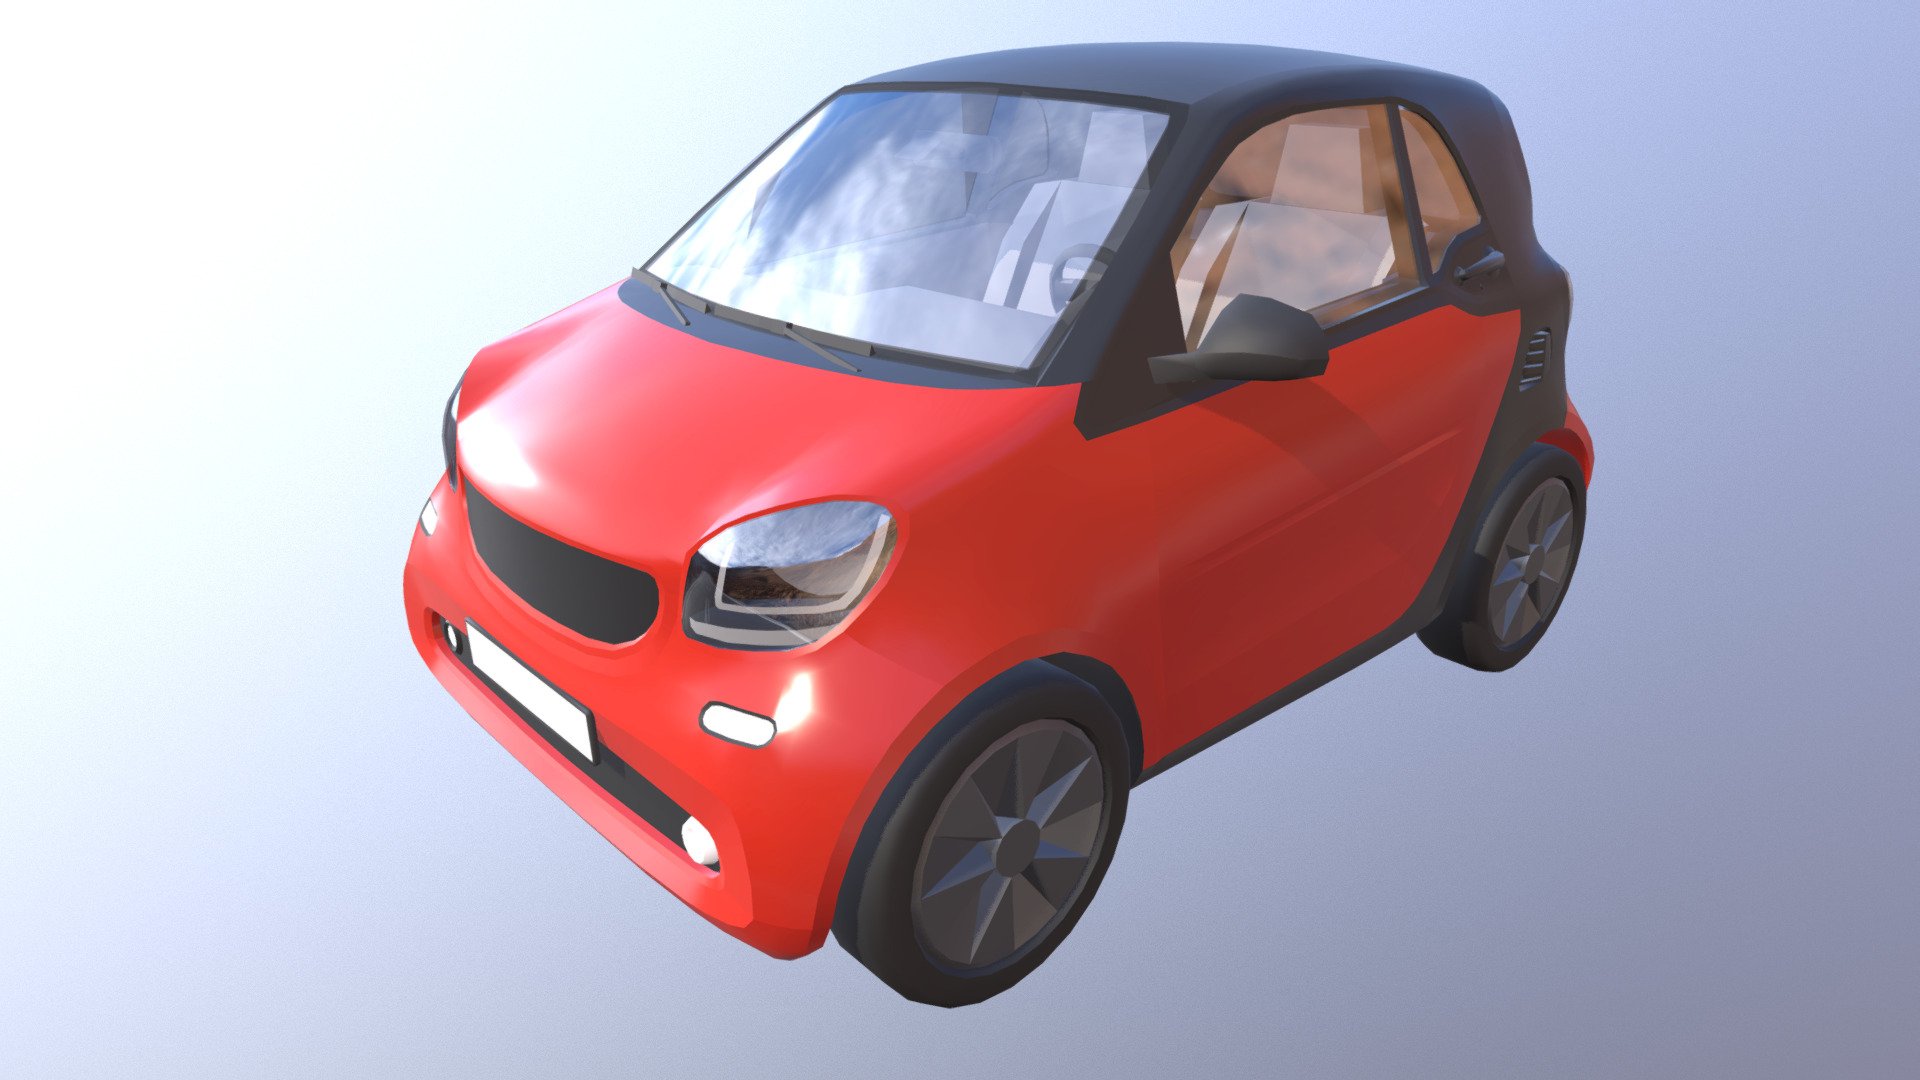 Fahrzeug typ - Microcar work in progress (7)



Aus unserem VIS-All Fahrzeugmodule 2.

Verwendete 3D-Modellierungssoftware Blender.

Das Modell wurde erstellt von 3DHaupt 3d model